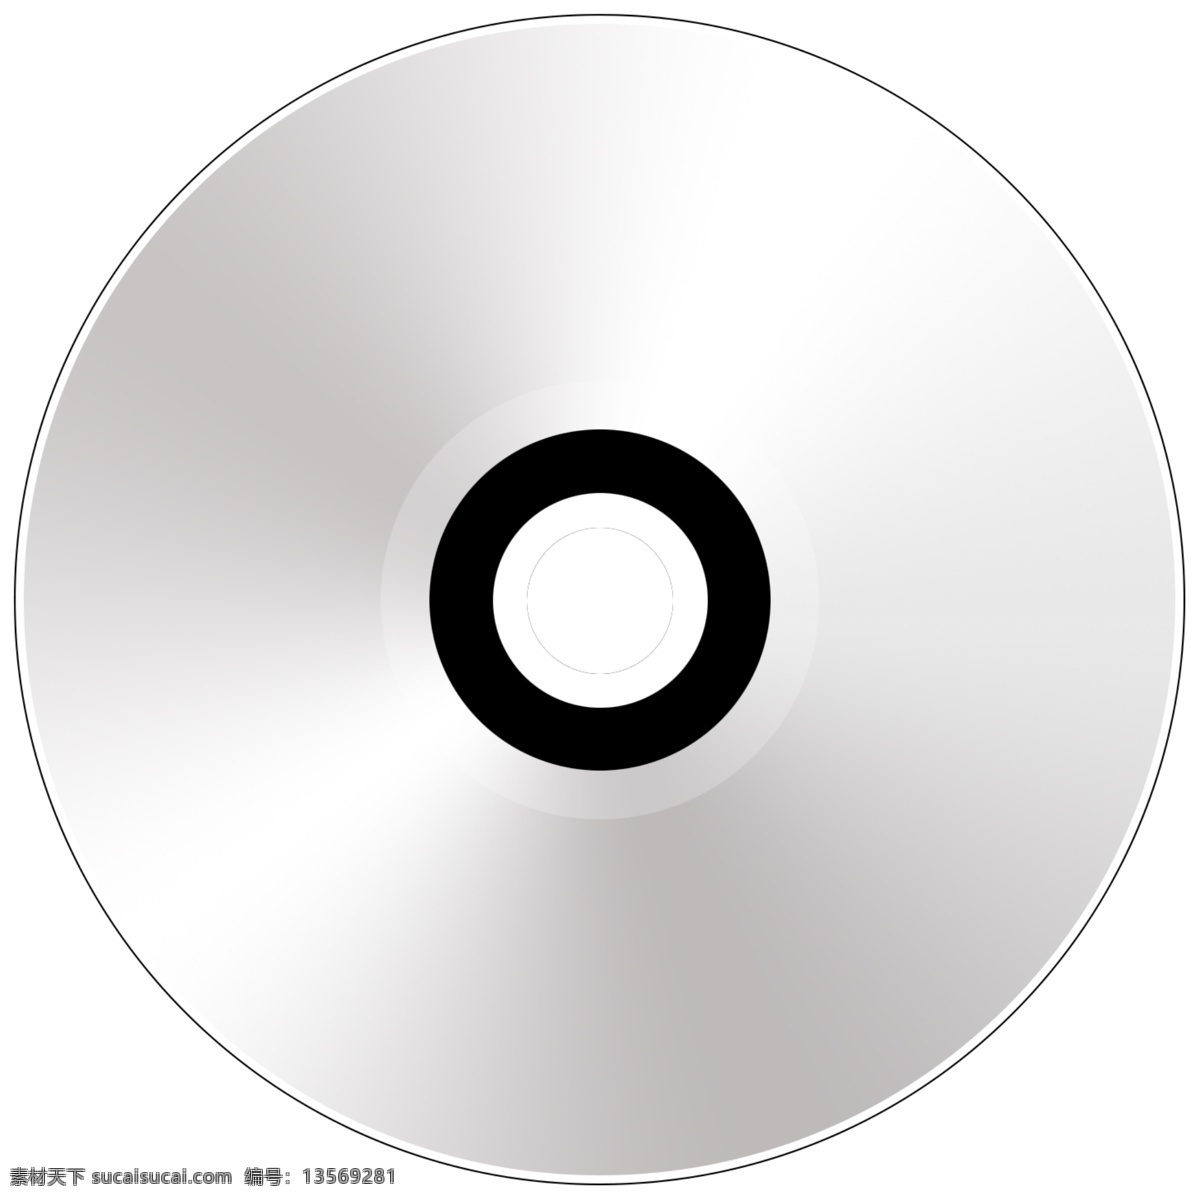 光盘免费下载 光盘 音乐光盘 k歌光盘 psd源文件